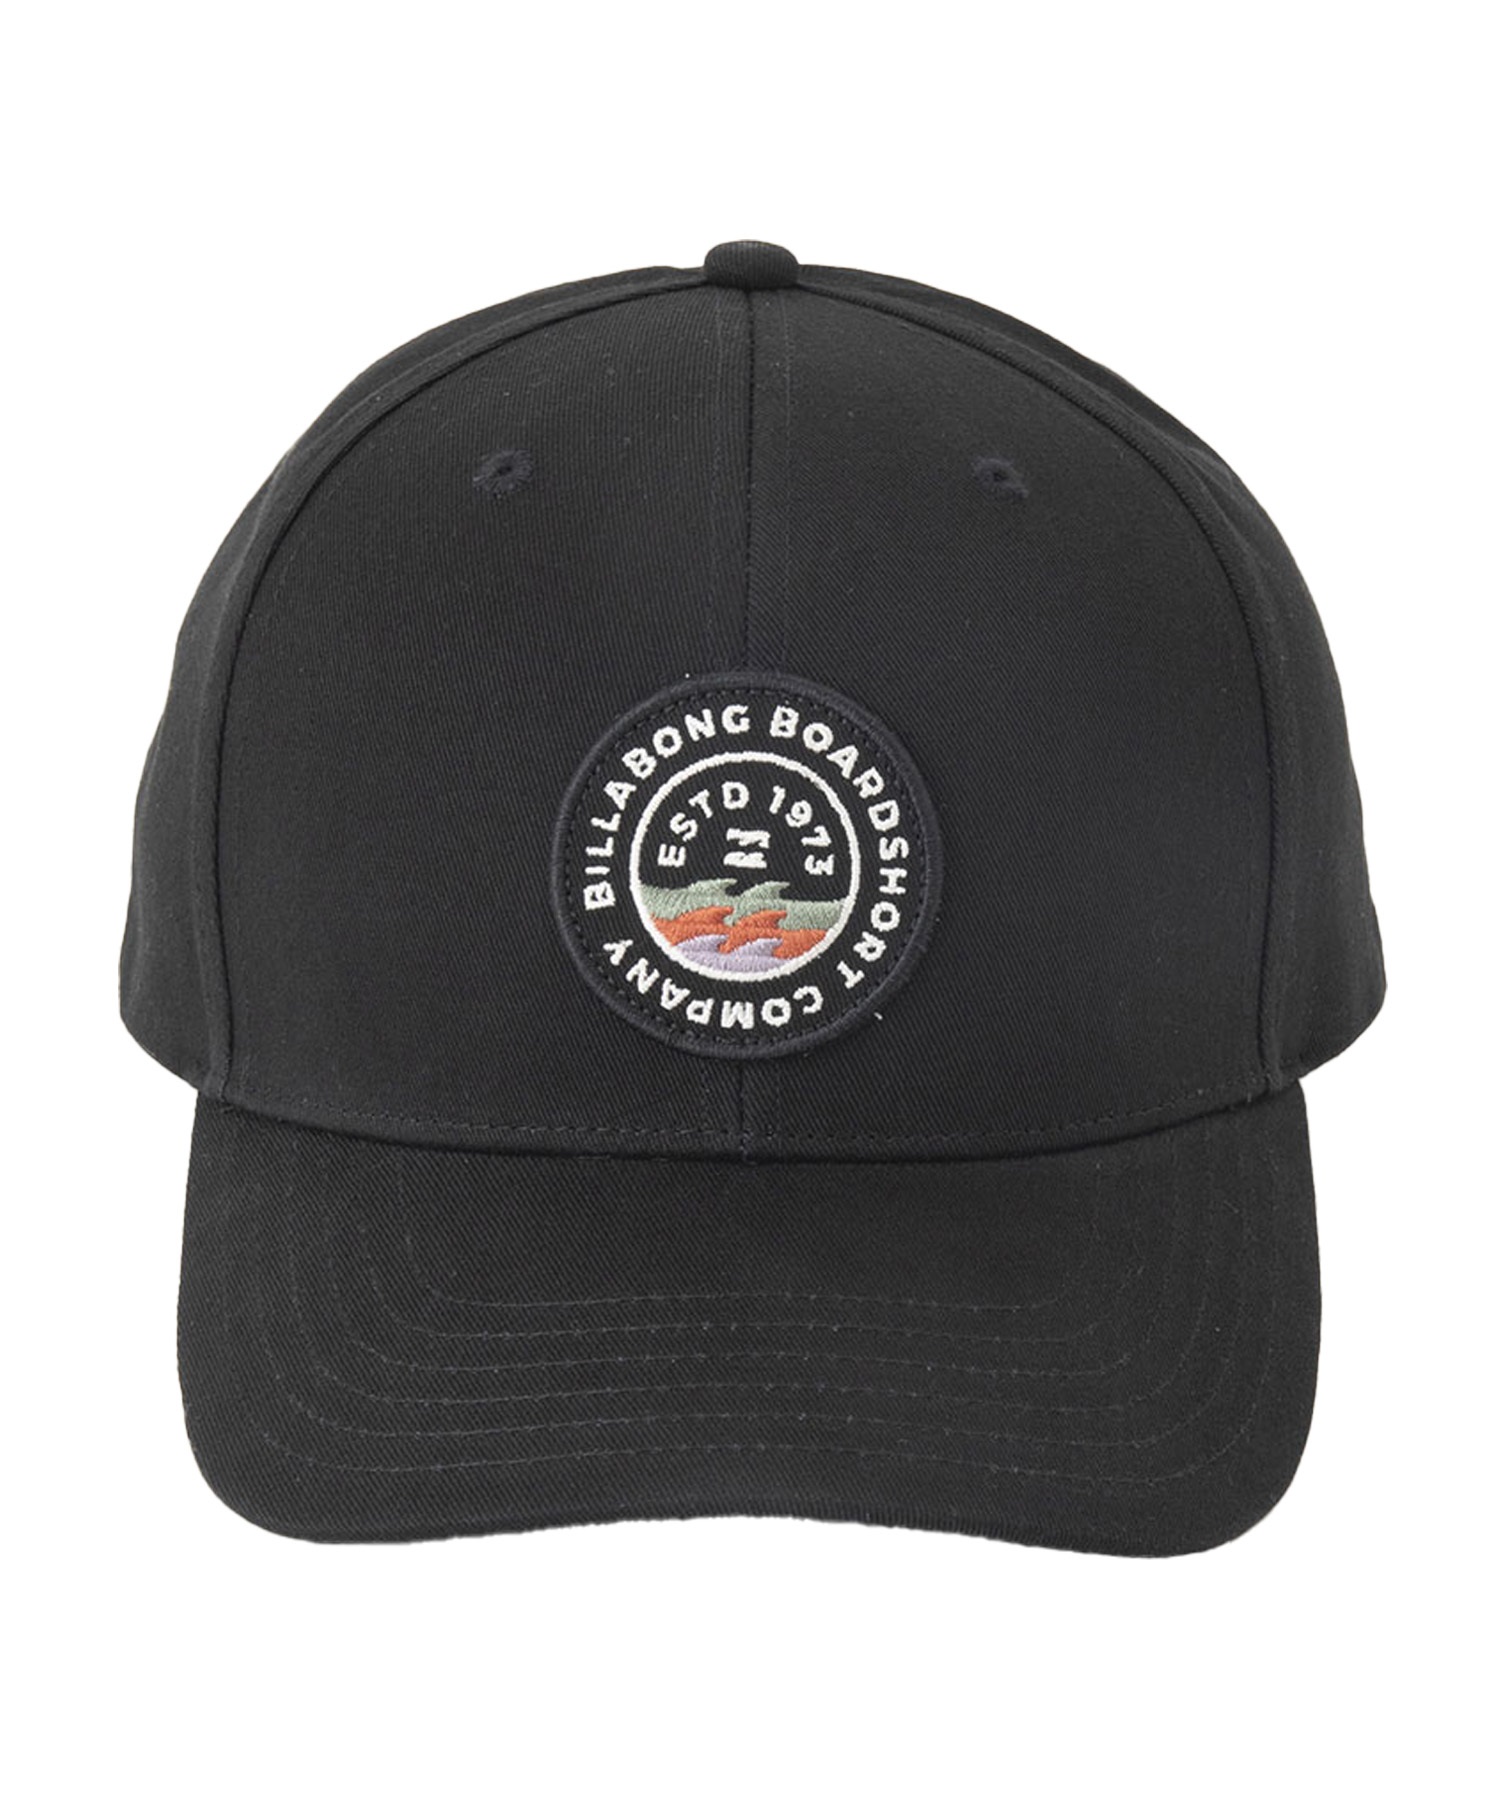 BILLABONG/ビラボン WALLED SNAPBACK キャップ 帽子 フリーサイズ BE011-917(STH-FREE)